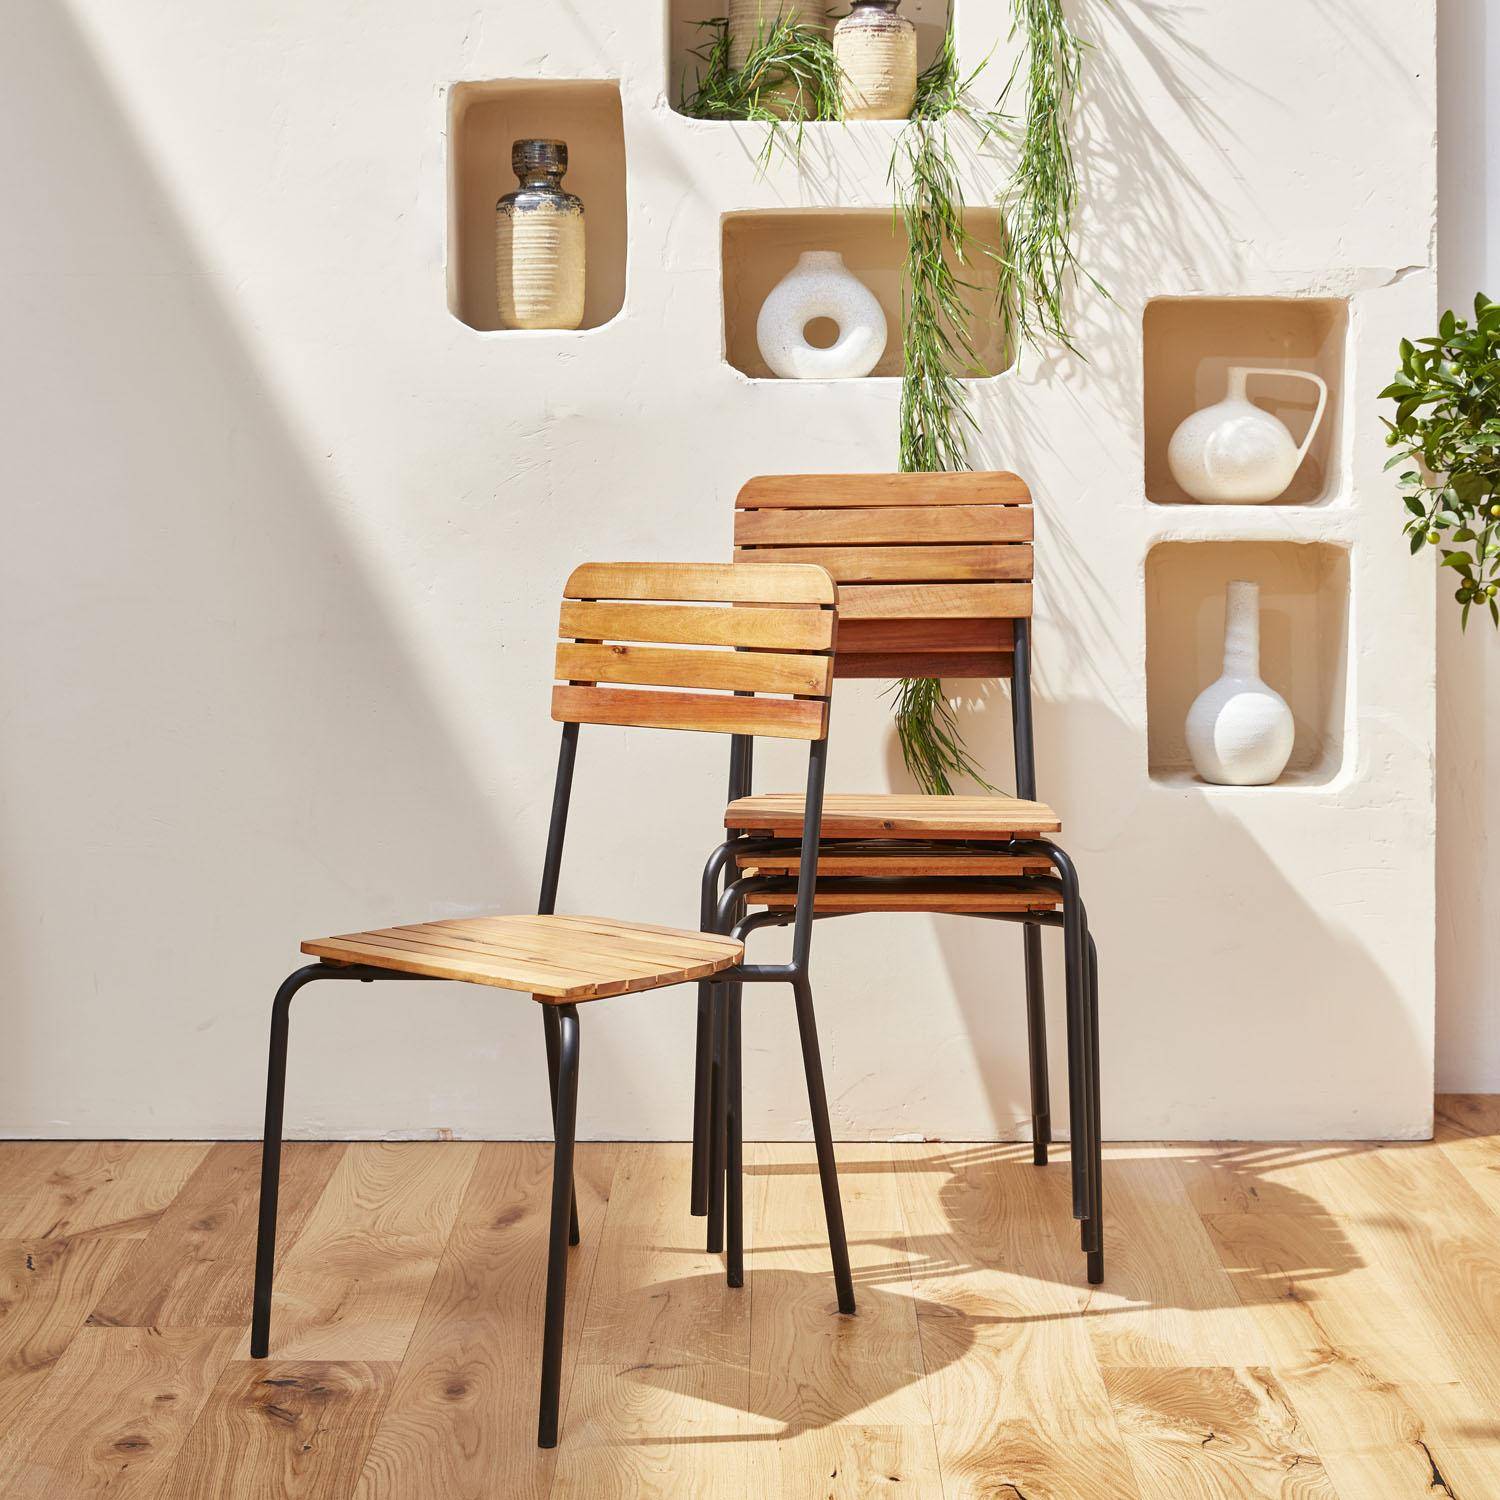 Gartenmöbel-Set aus Holz und Metall 180x90cm - Lima - Rechteckiger Tisch aus Akazie und Metall mit 4 Stühlen und 2 stapelbaren Sesseln Photo2